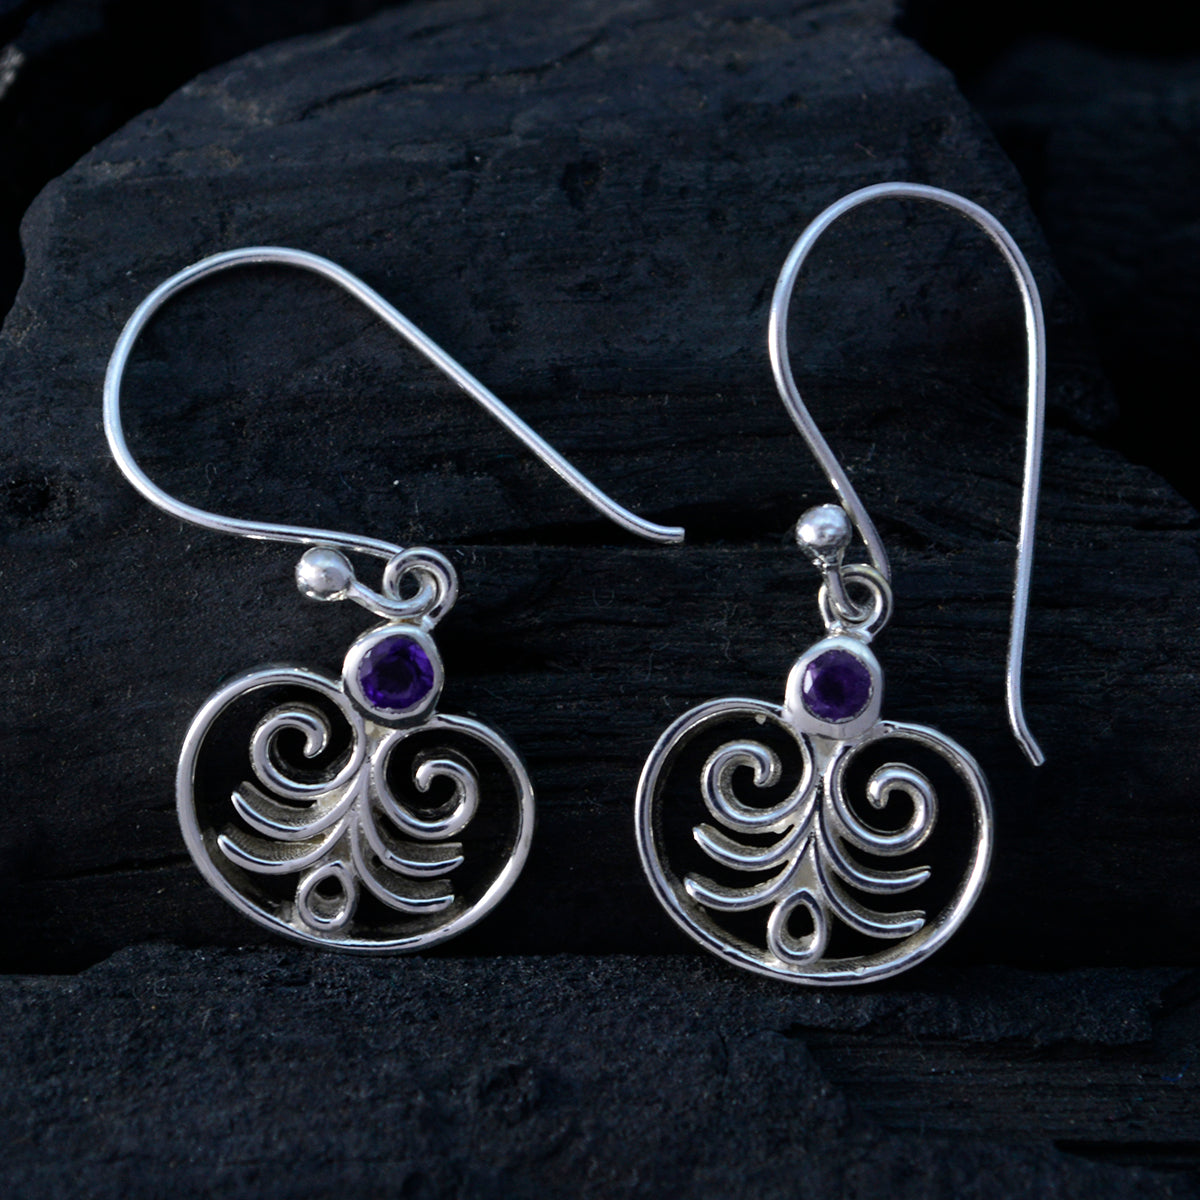 Riyo Real Gemstones round Faceted Purple Amethyst Silver Earrings sister gift